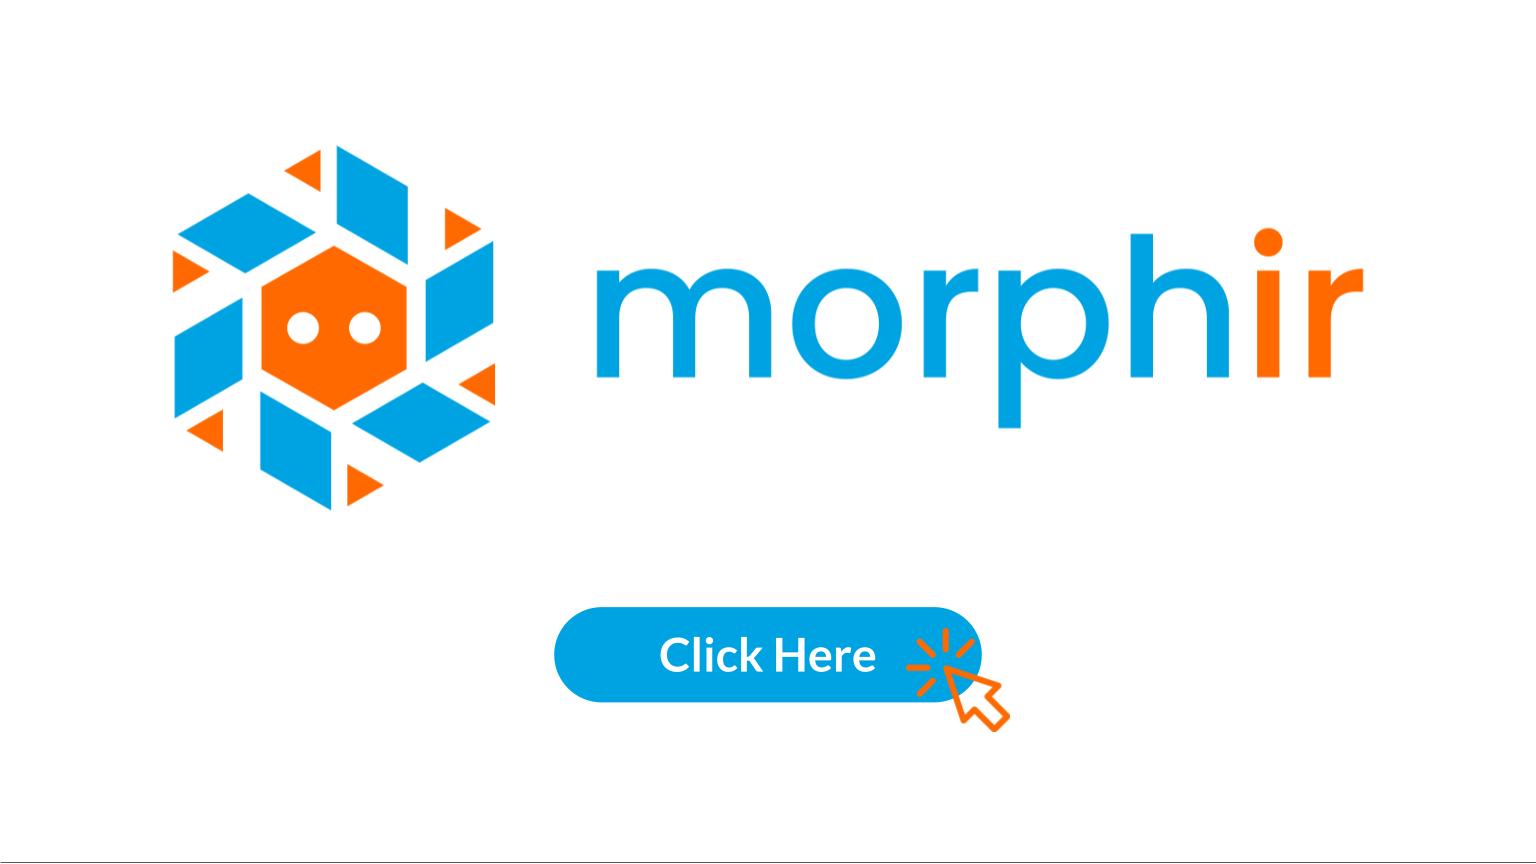 Morphir Homepage